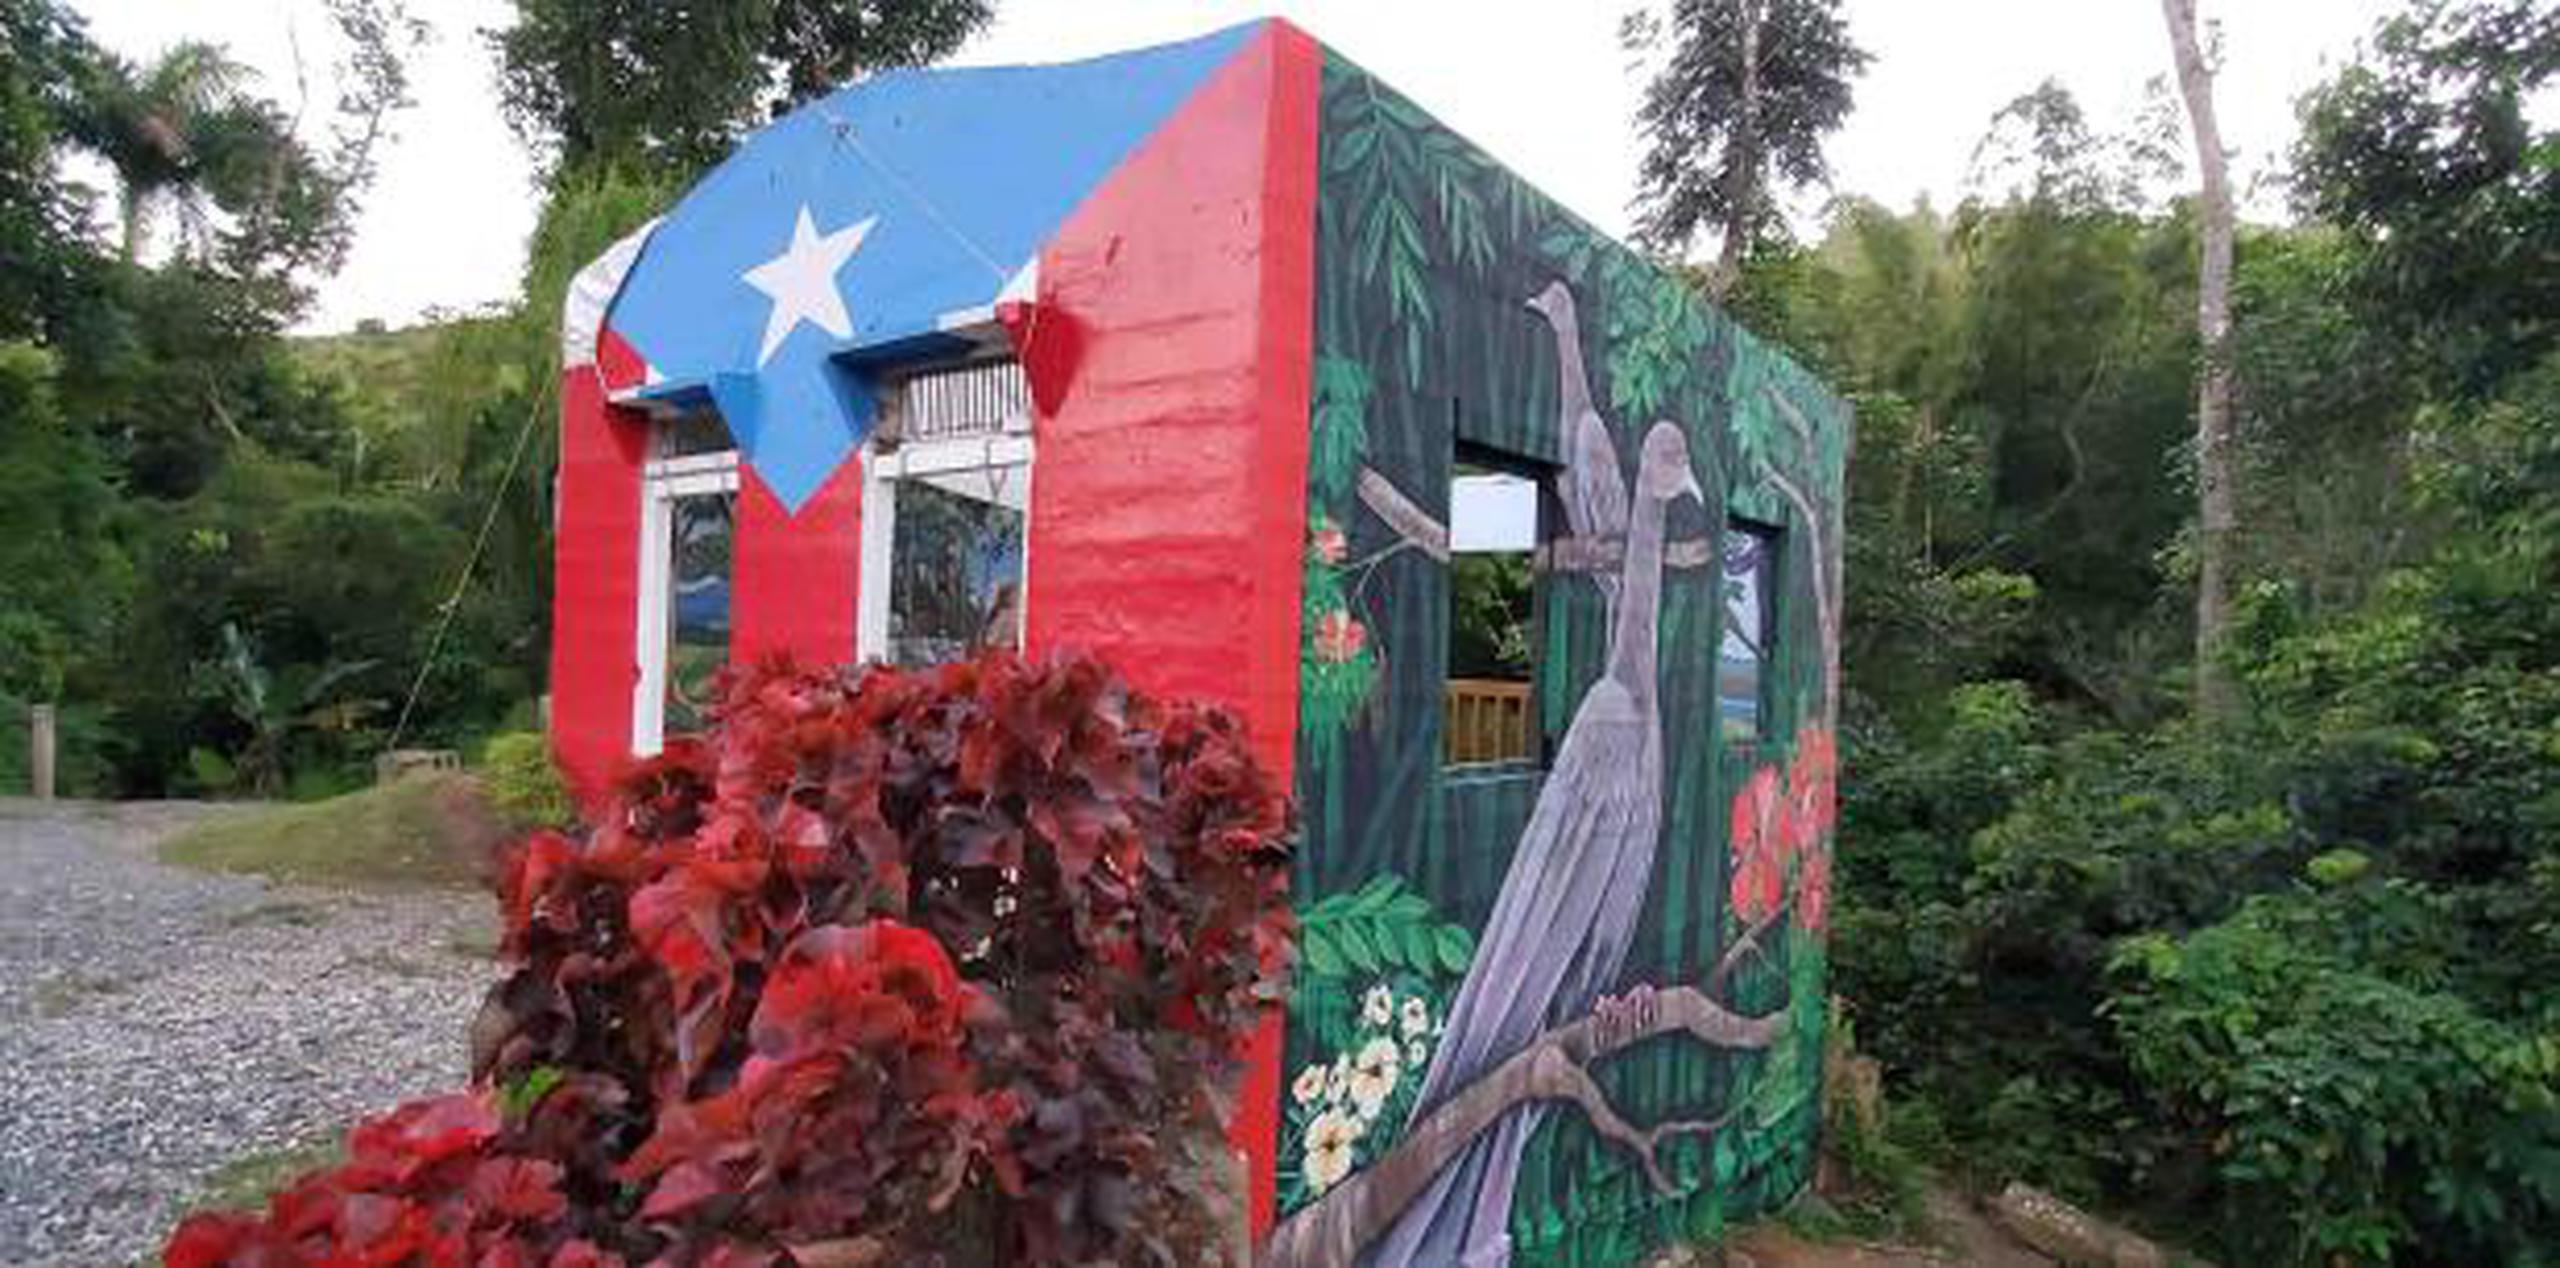 Los murales estuvieron a cargo de los hermanos Melvin y Shaggy Vázquez, mientras que Douglas Candelario colaboró en el jardín. (Suministrada)